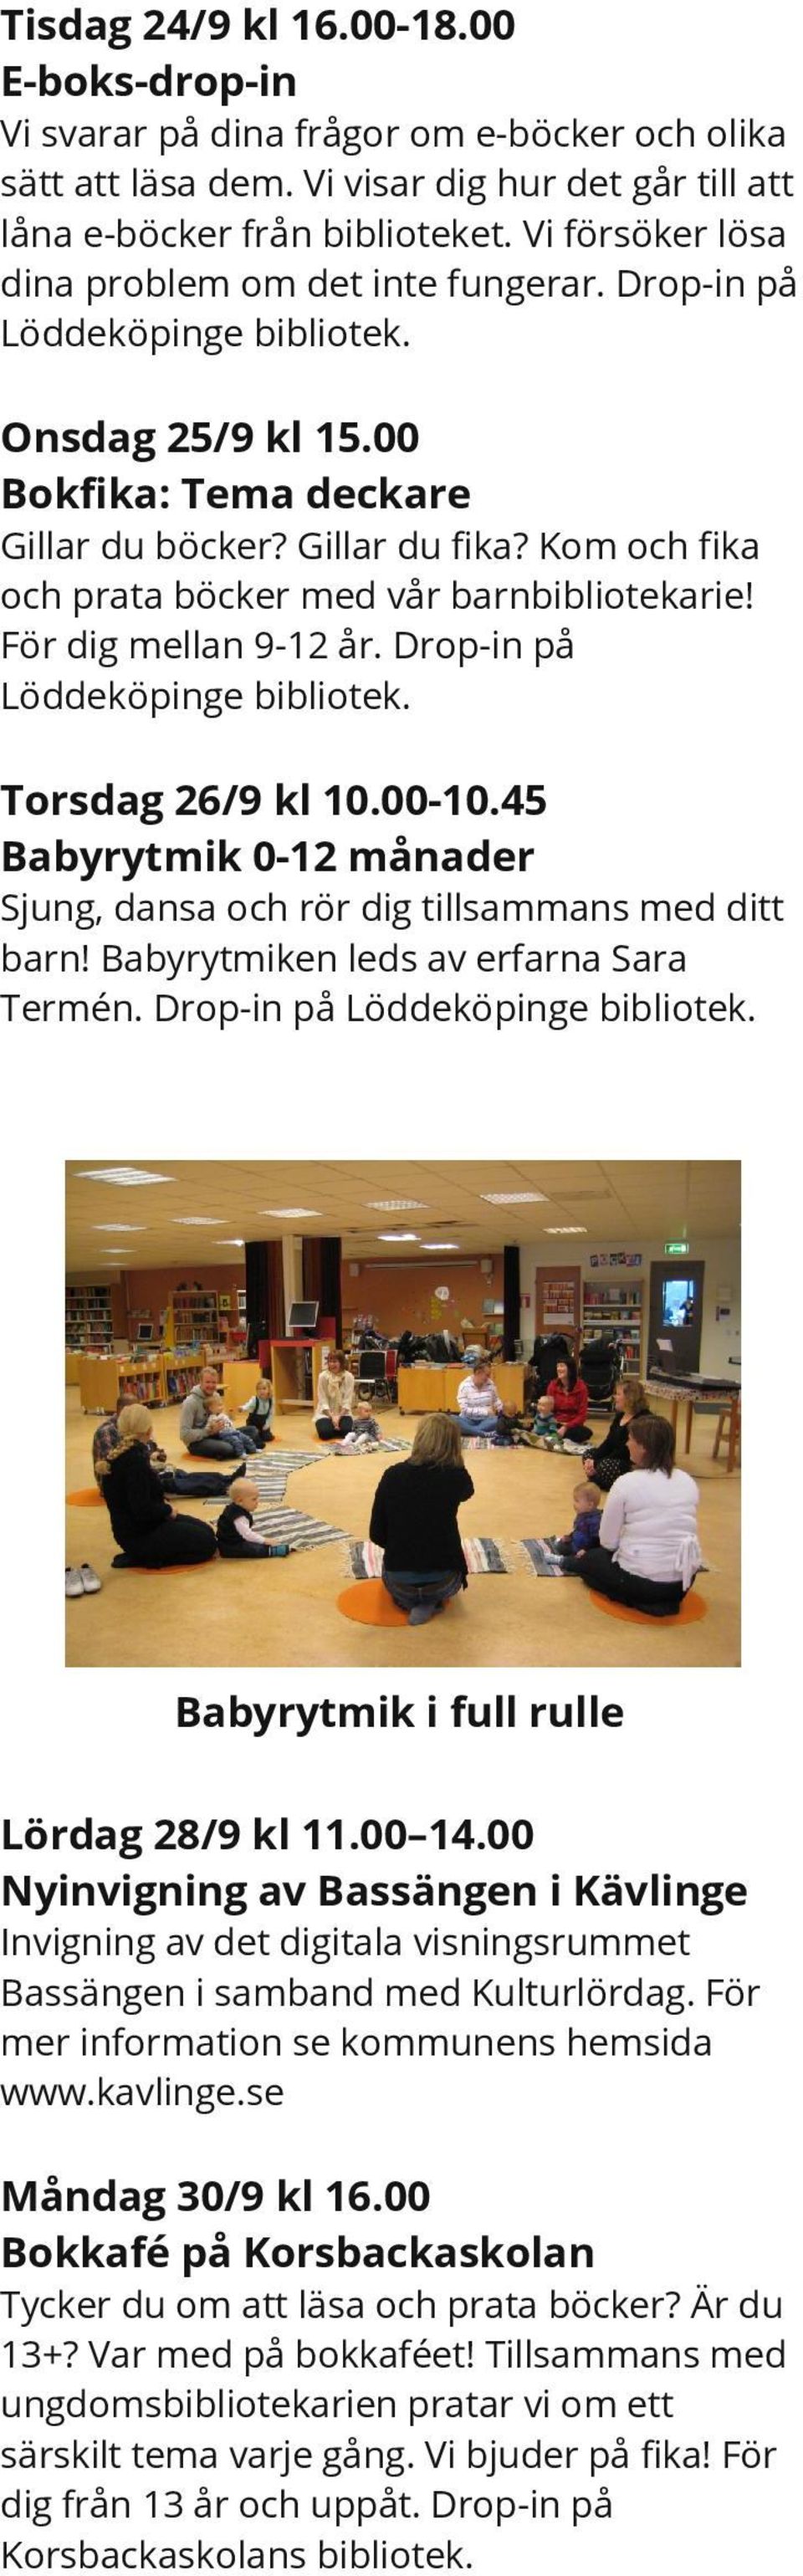 Kom och fika och prata böcker med vår barnbibliotekarie! För dig mellan 9-12 år. Drop-in på Löddeköpinge Torsdag 26/9 kl 10.00-10.